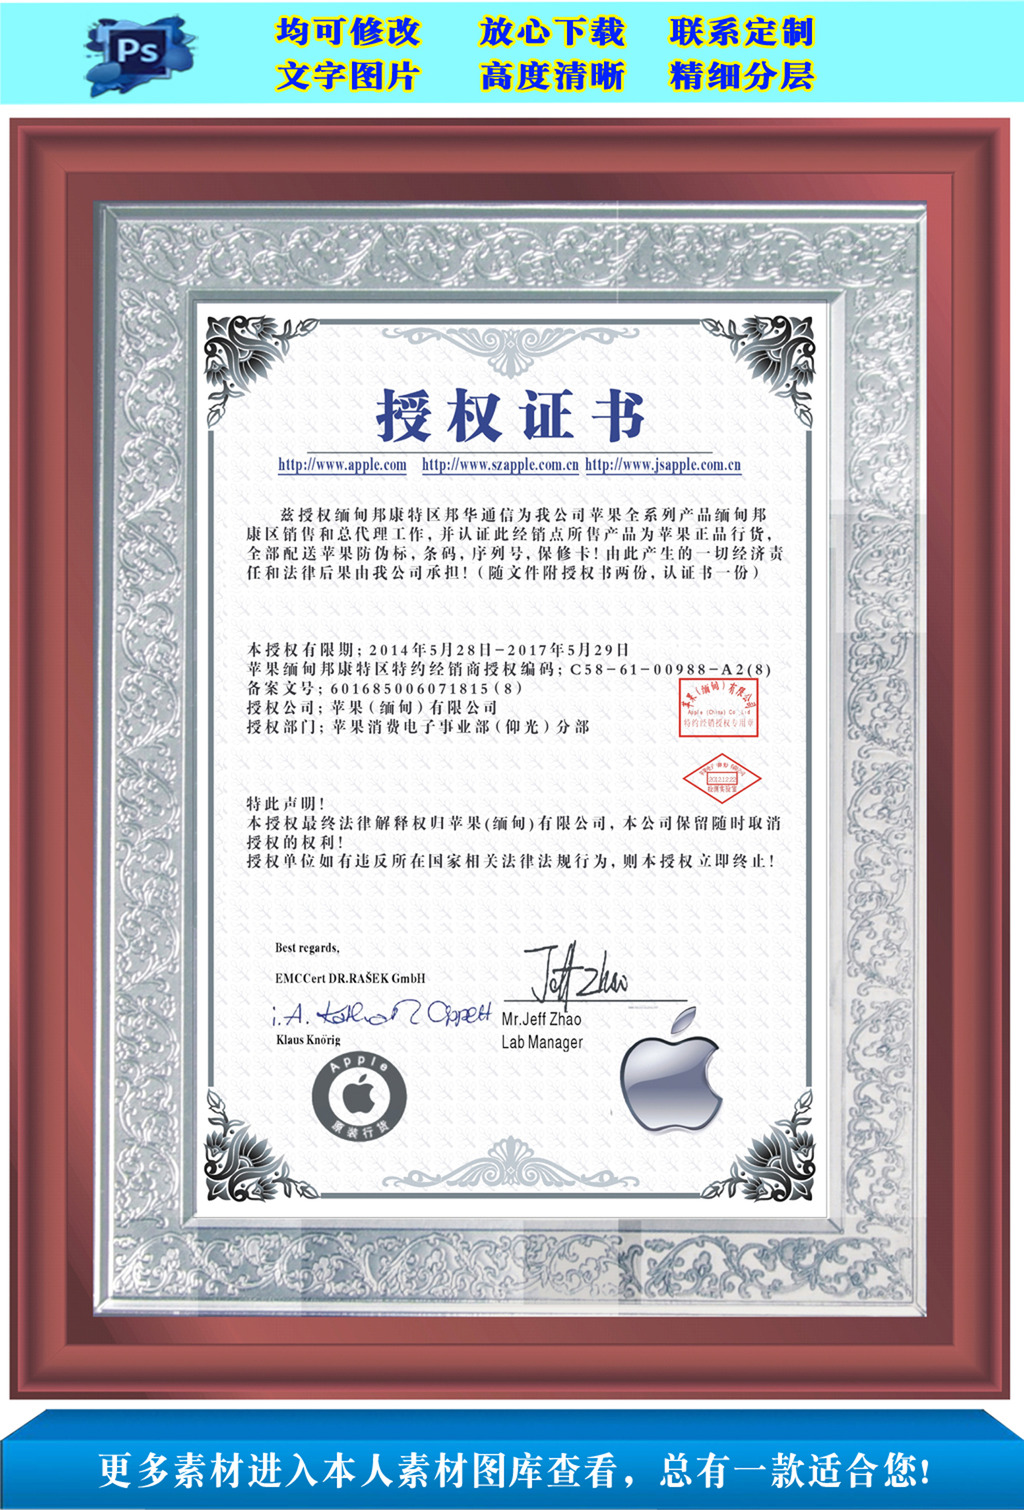 苹果公司认证苹果销售授权证书模板下载(图片